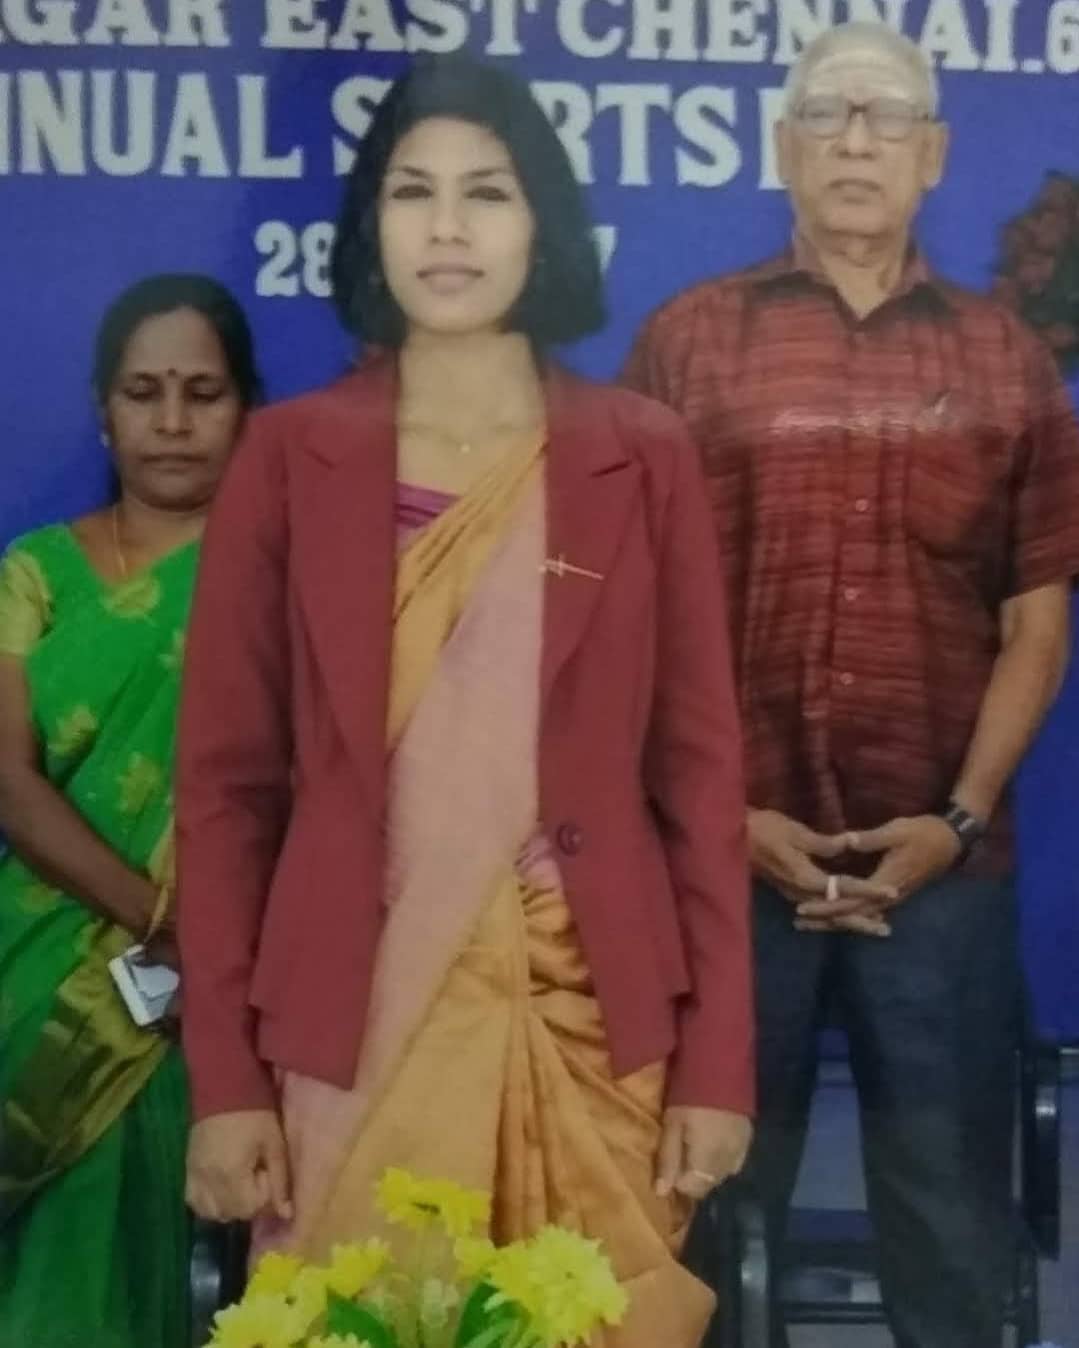 वल्लिअम्मल कॉलेज में अपने माता-पिता के साथ अतिथि वक्ता के रूप में पोज देते हुए भवानी देवी